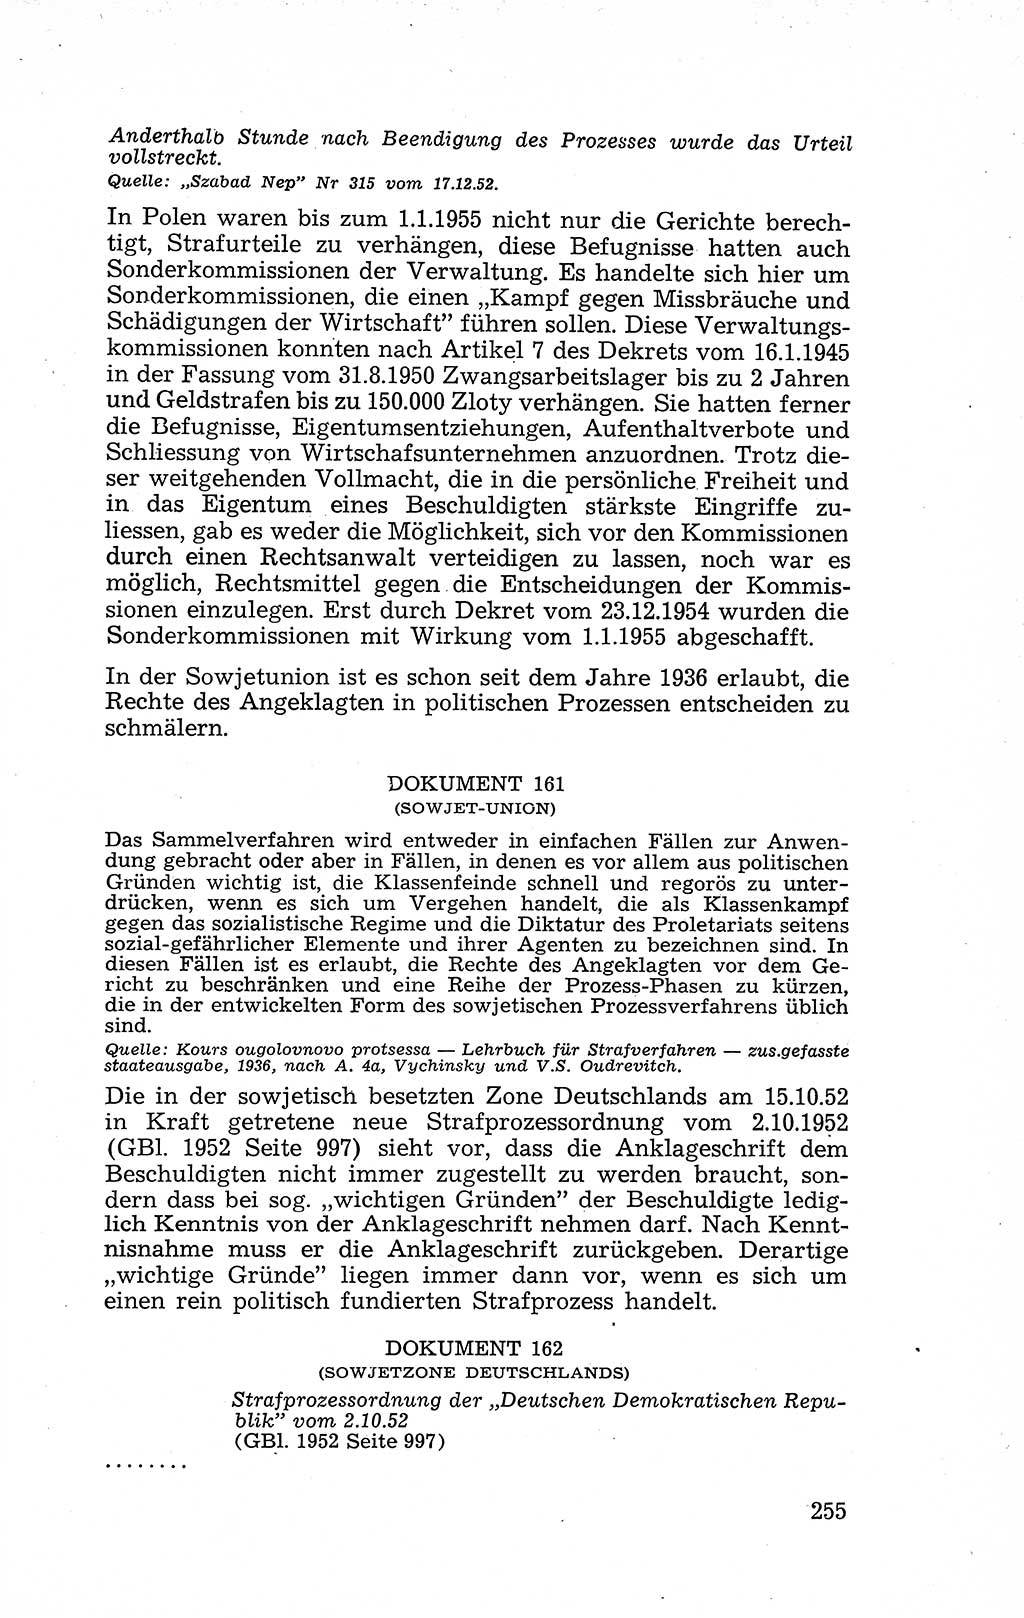 Recht in Fesseln, Dokumente, Internationale Juristen-Kommission [Bundesrepublik Deutschland (BRD)] 1955, Seite 255 (R. Dok. IJK BRD 1955, S. 255)